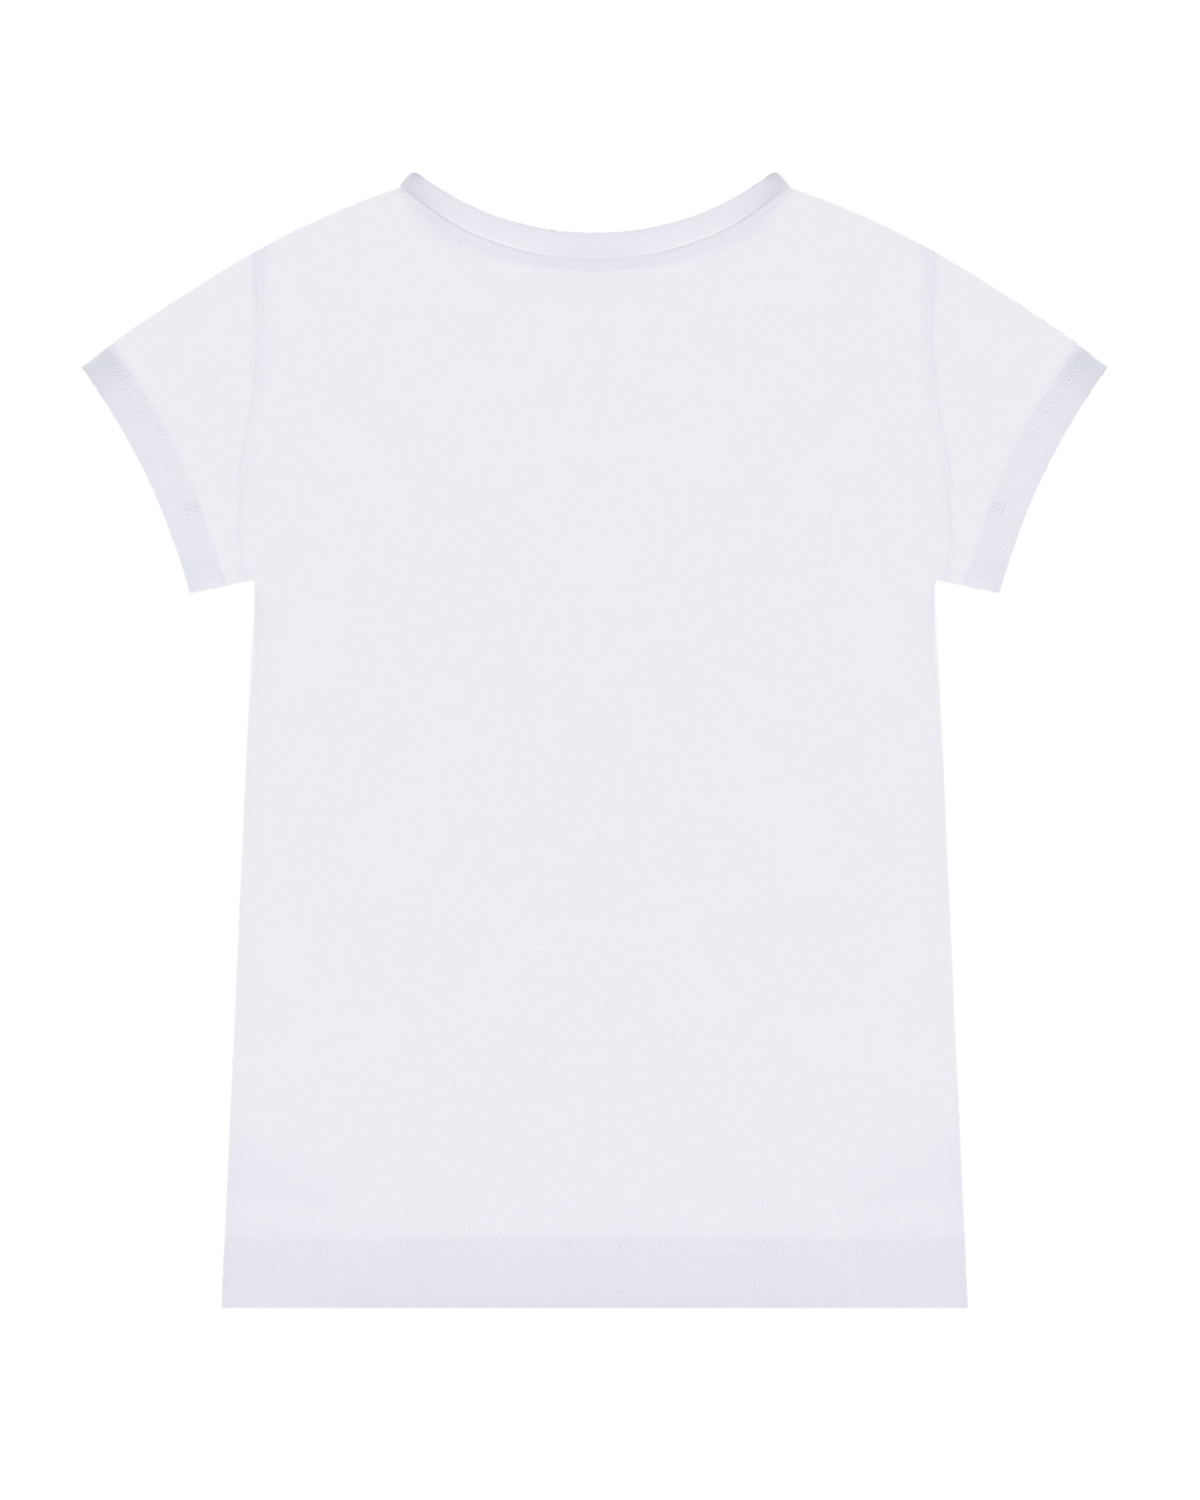 Белая футболка с принтом "клубничное варенье" Monnalisa детская, размер 104, цвет белый - фото 2